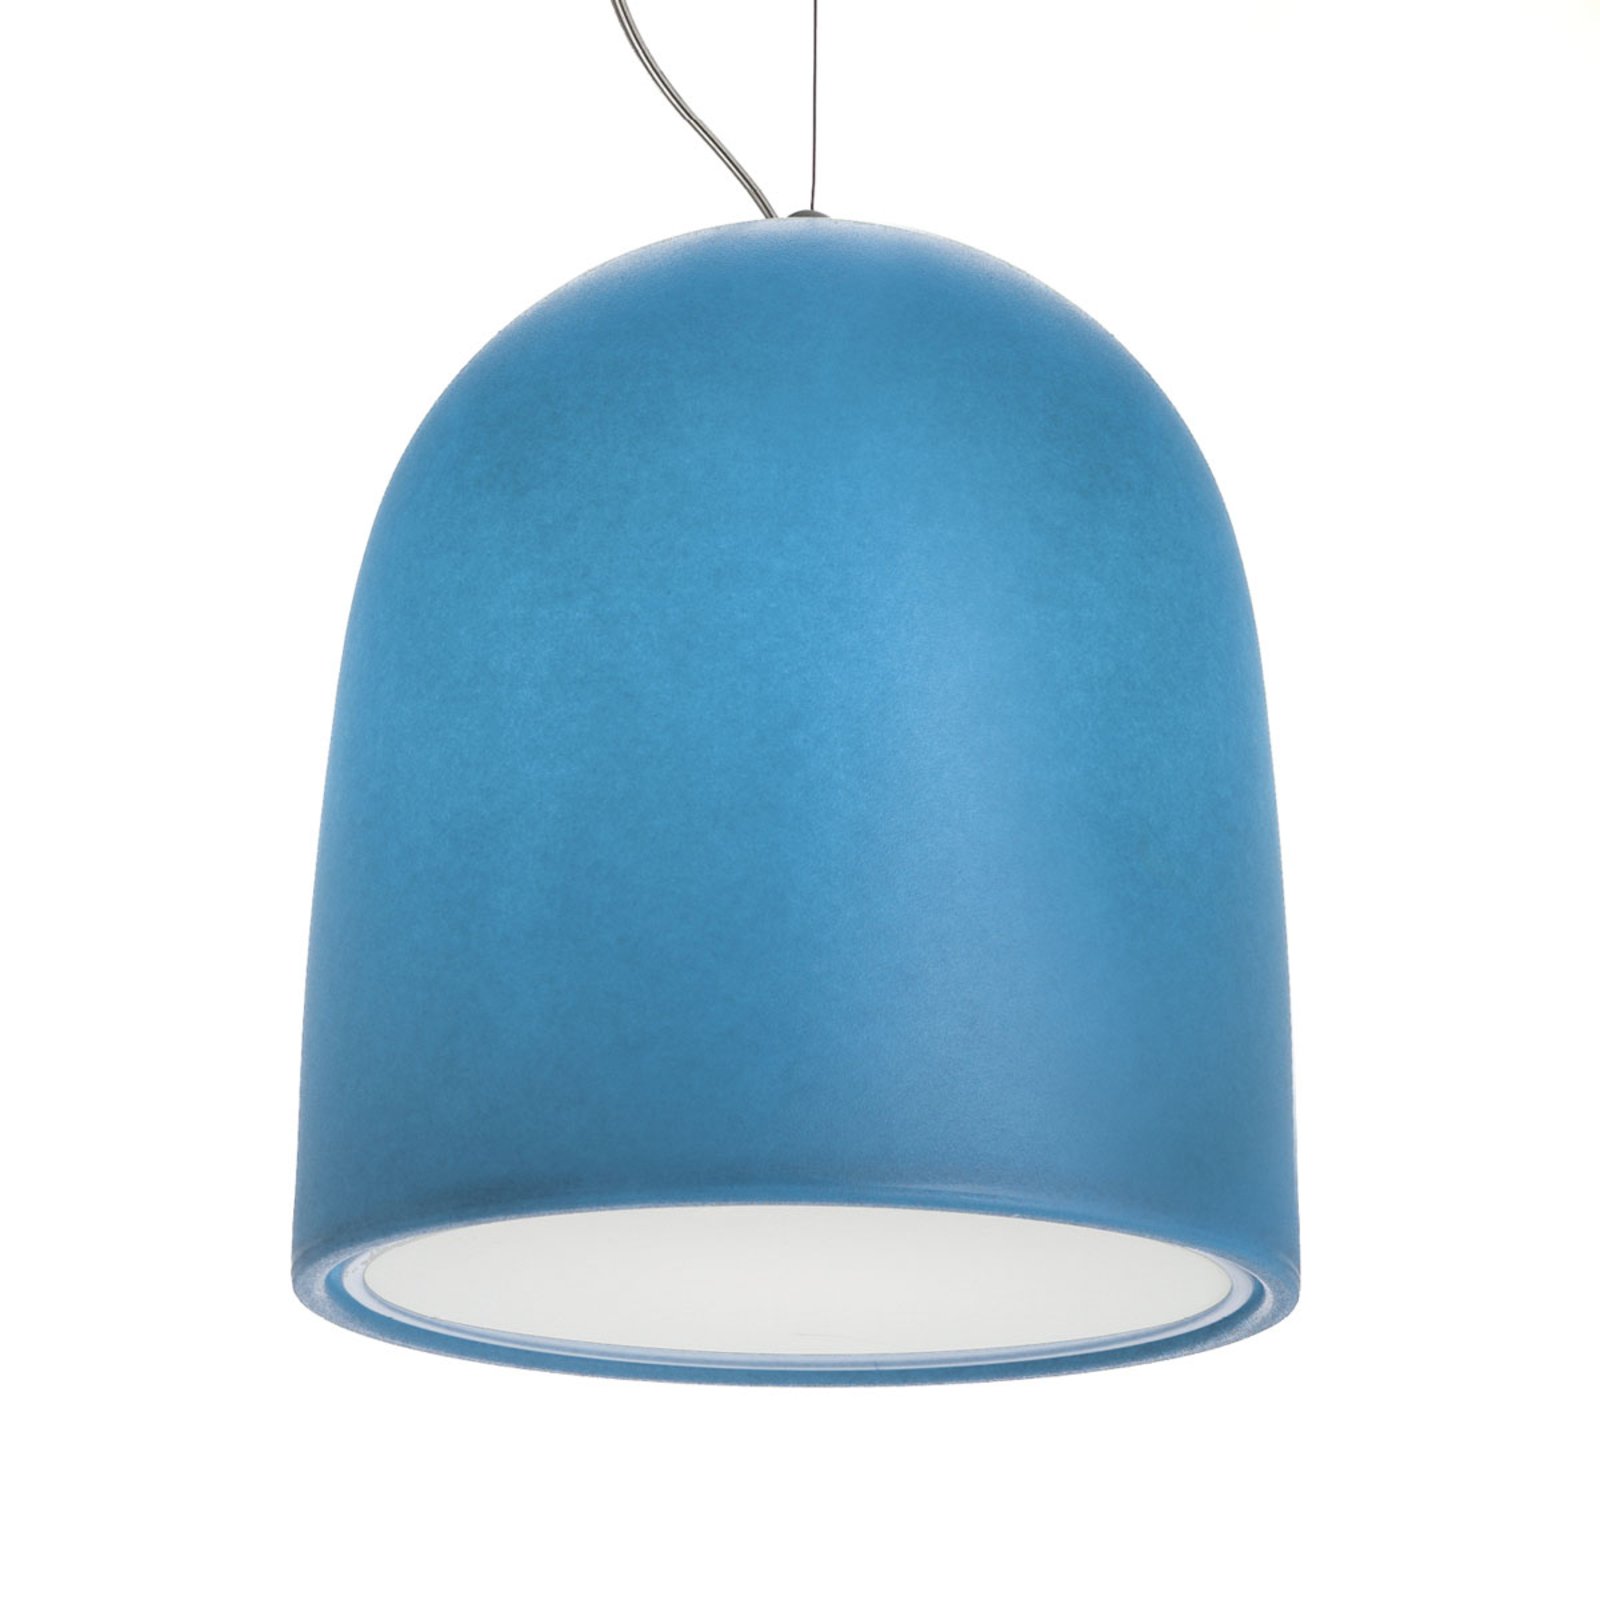 Modo Luce Campanone lámpara colgante Ø 51 cm azul